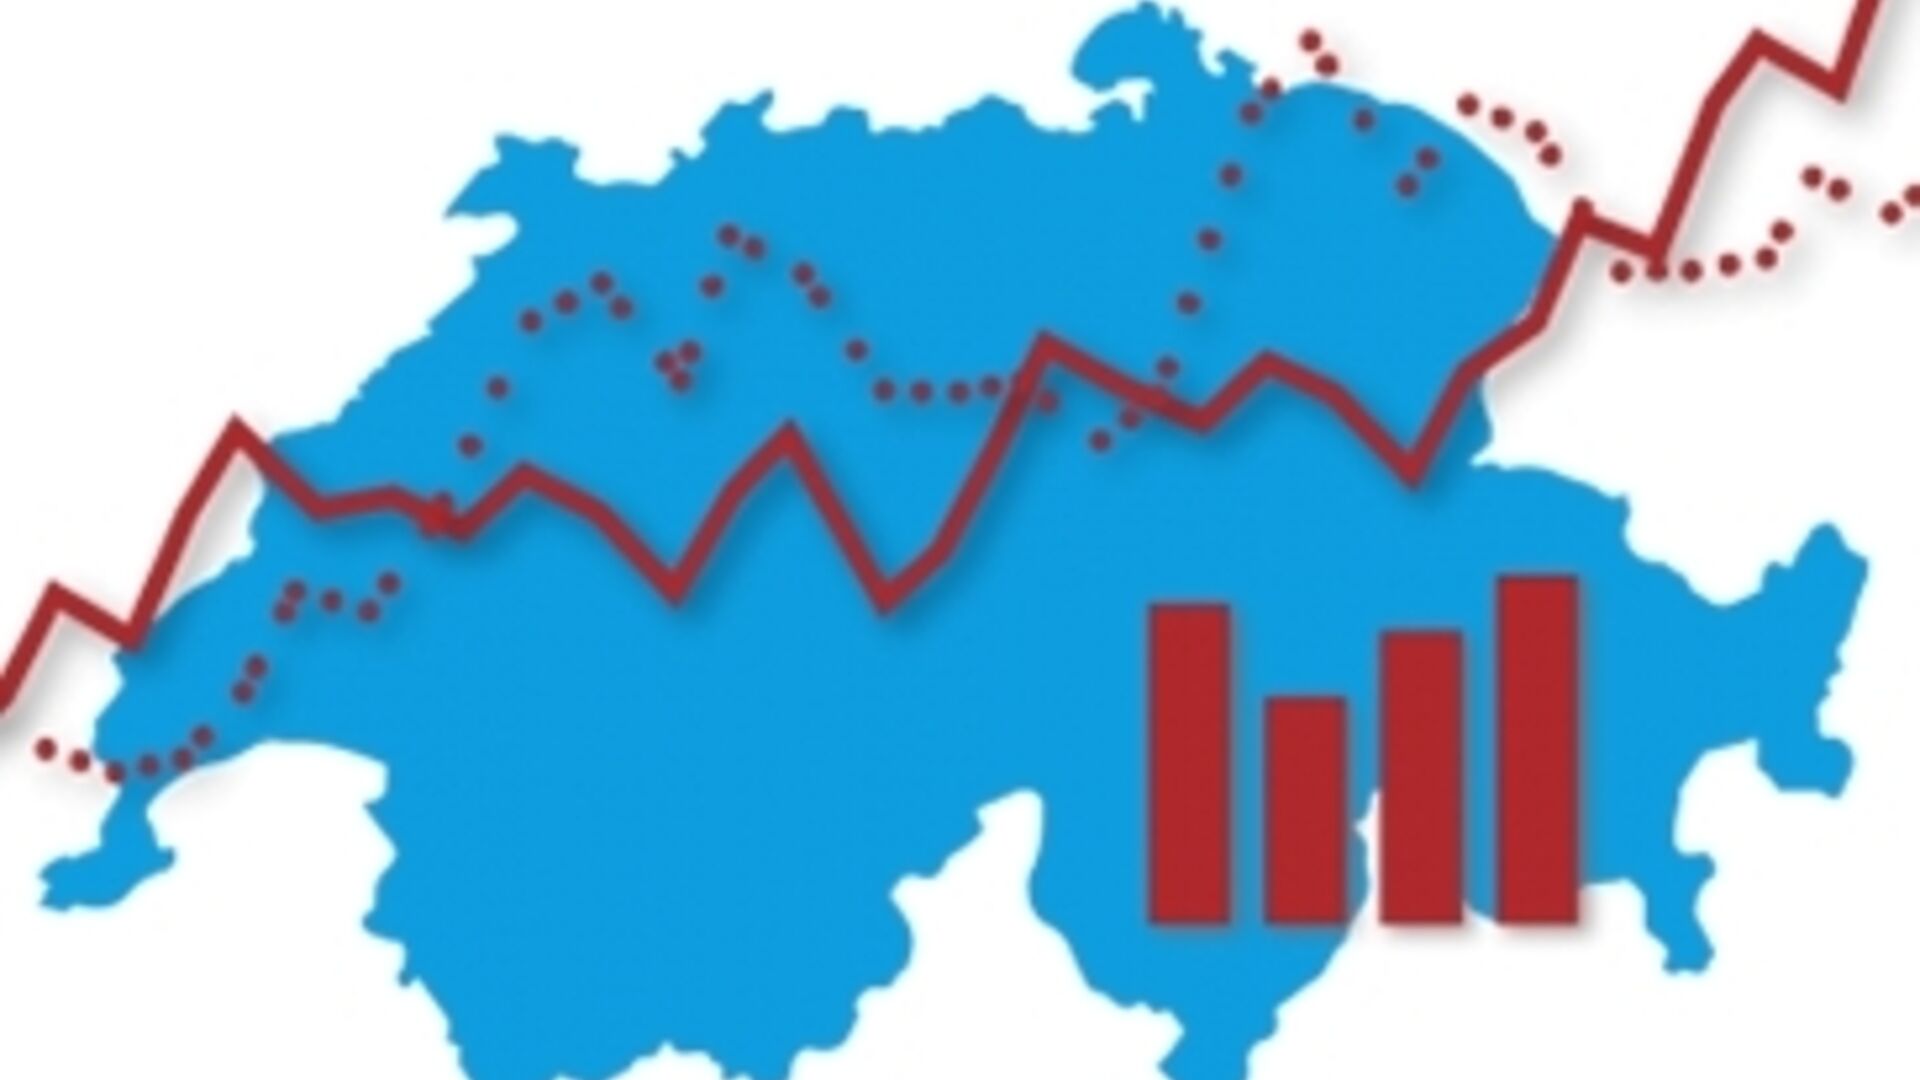 Zwitserse Statistiekdagen: de belangrijkste visual van de editie van 2023